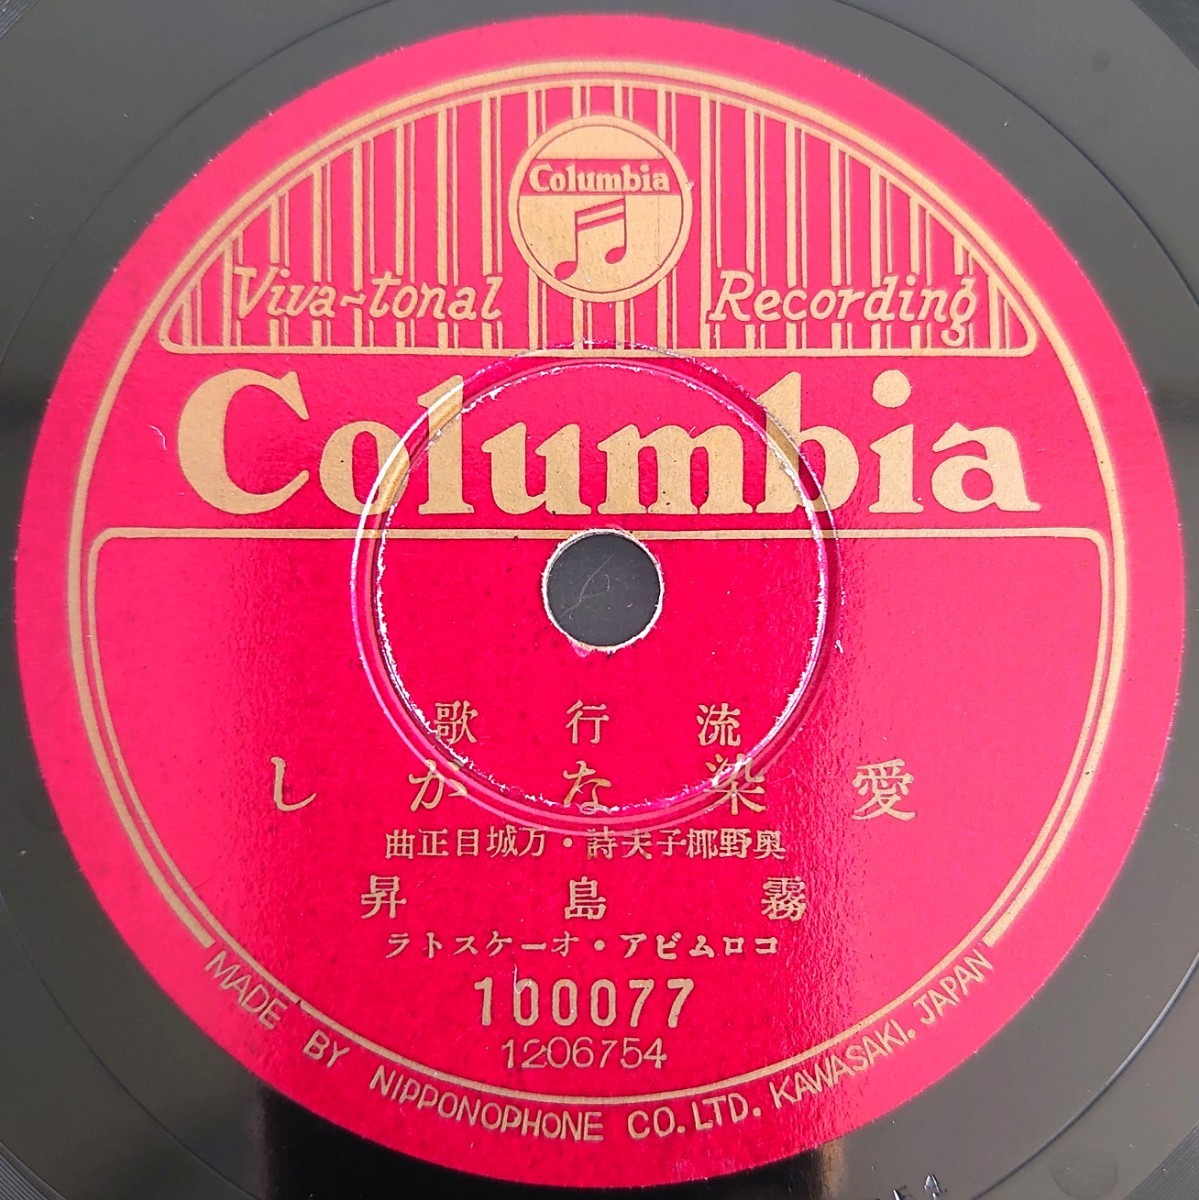 【SP盤レコード】Columbia流行歌/愛染ながし 霧島昇/忘れな草の歌 二葉あき子/SPレコードの画像1